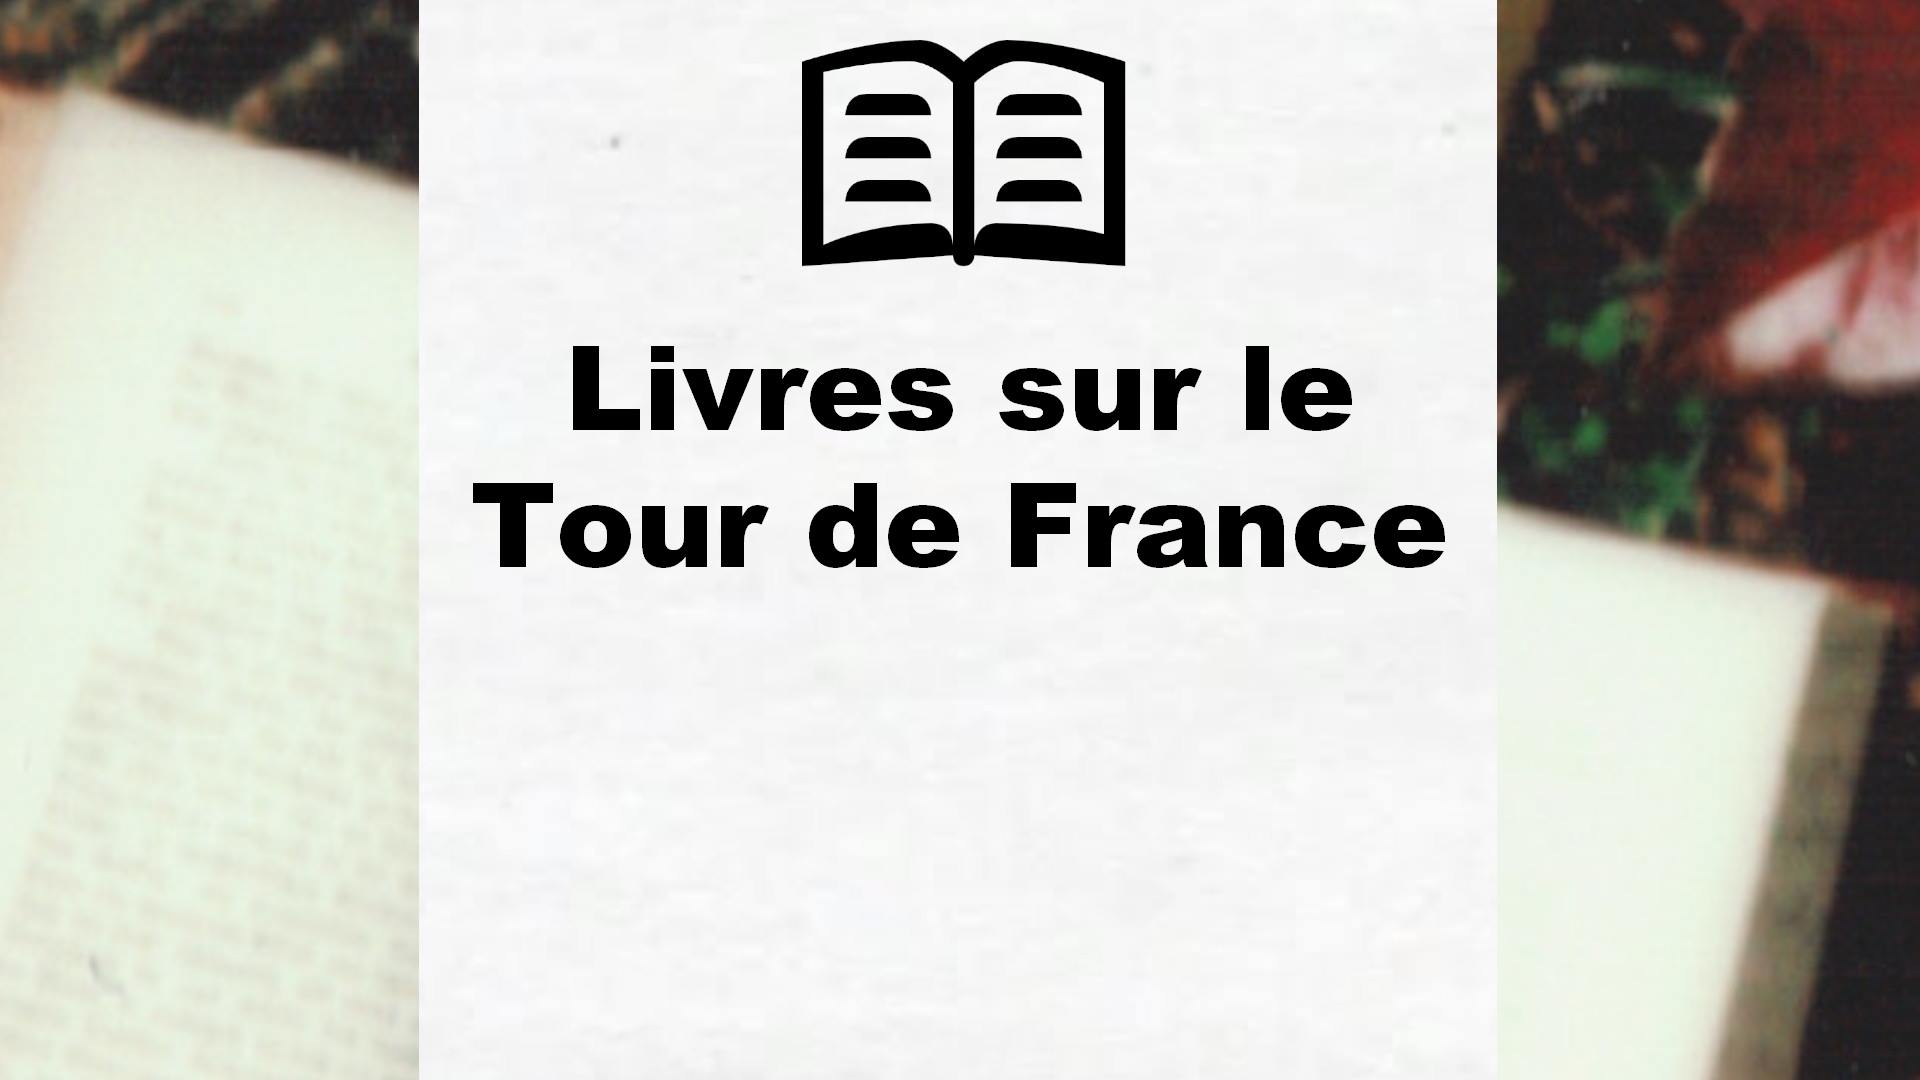 Livres sur le Tour de France